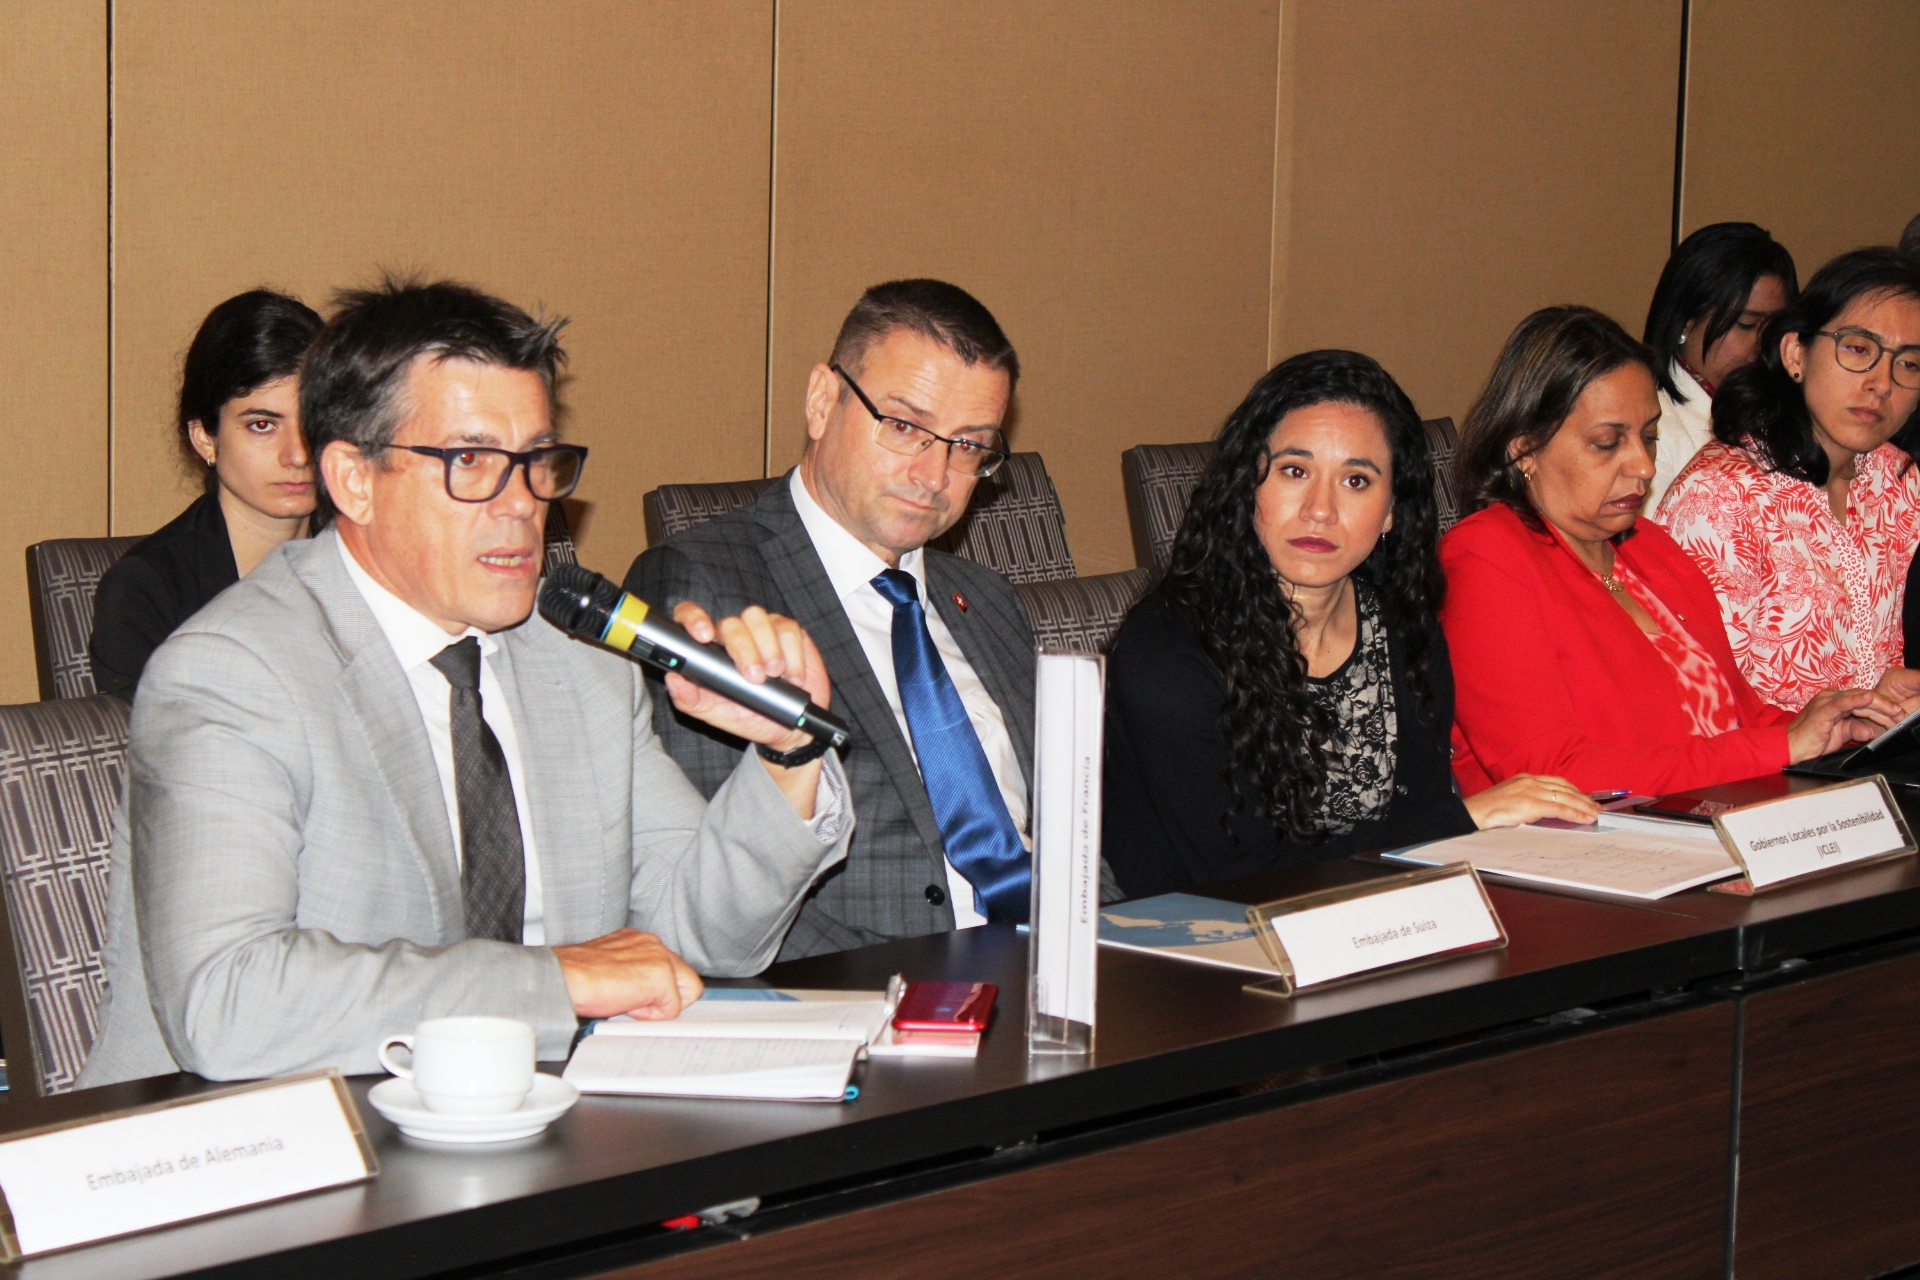 La actividad se propició un diálogo abierto entre el CNCCMDL y representantes del cuerpo diplomático y agencias de cooperación.